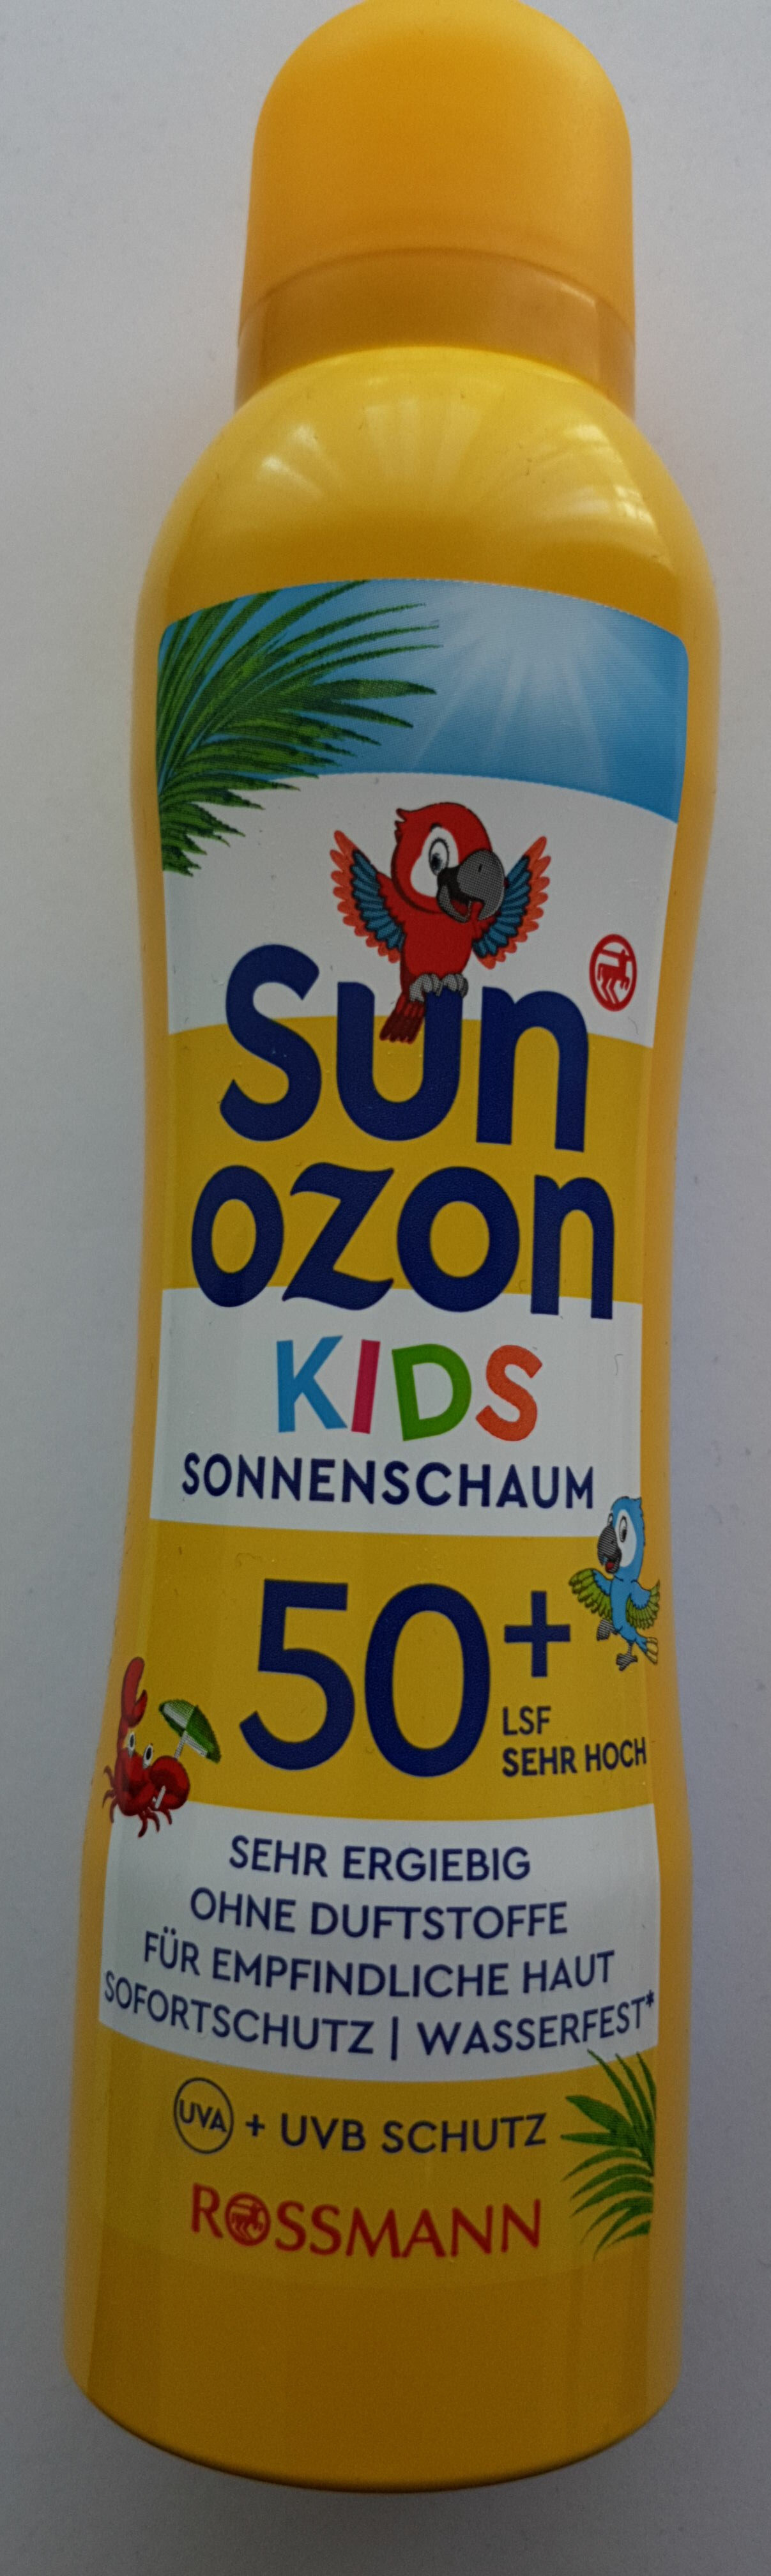 Sun ozon kids - Produkt - de